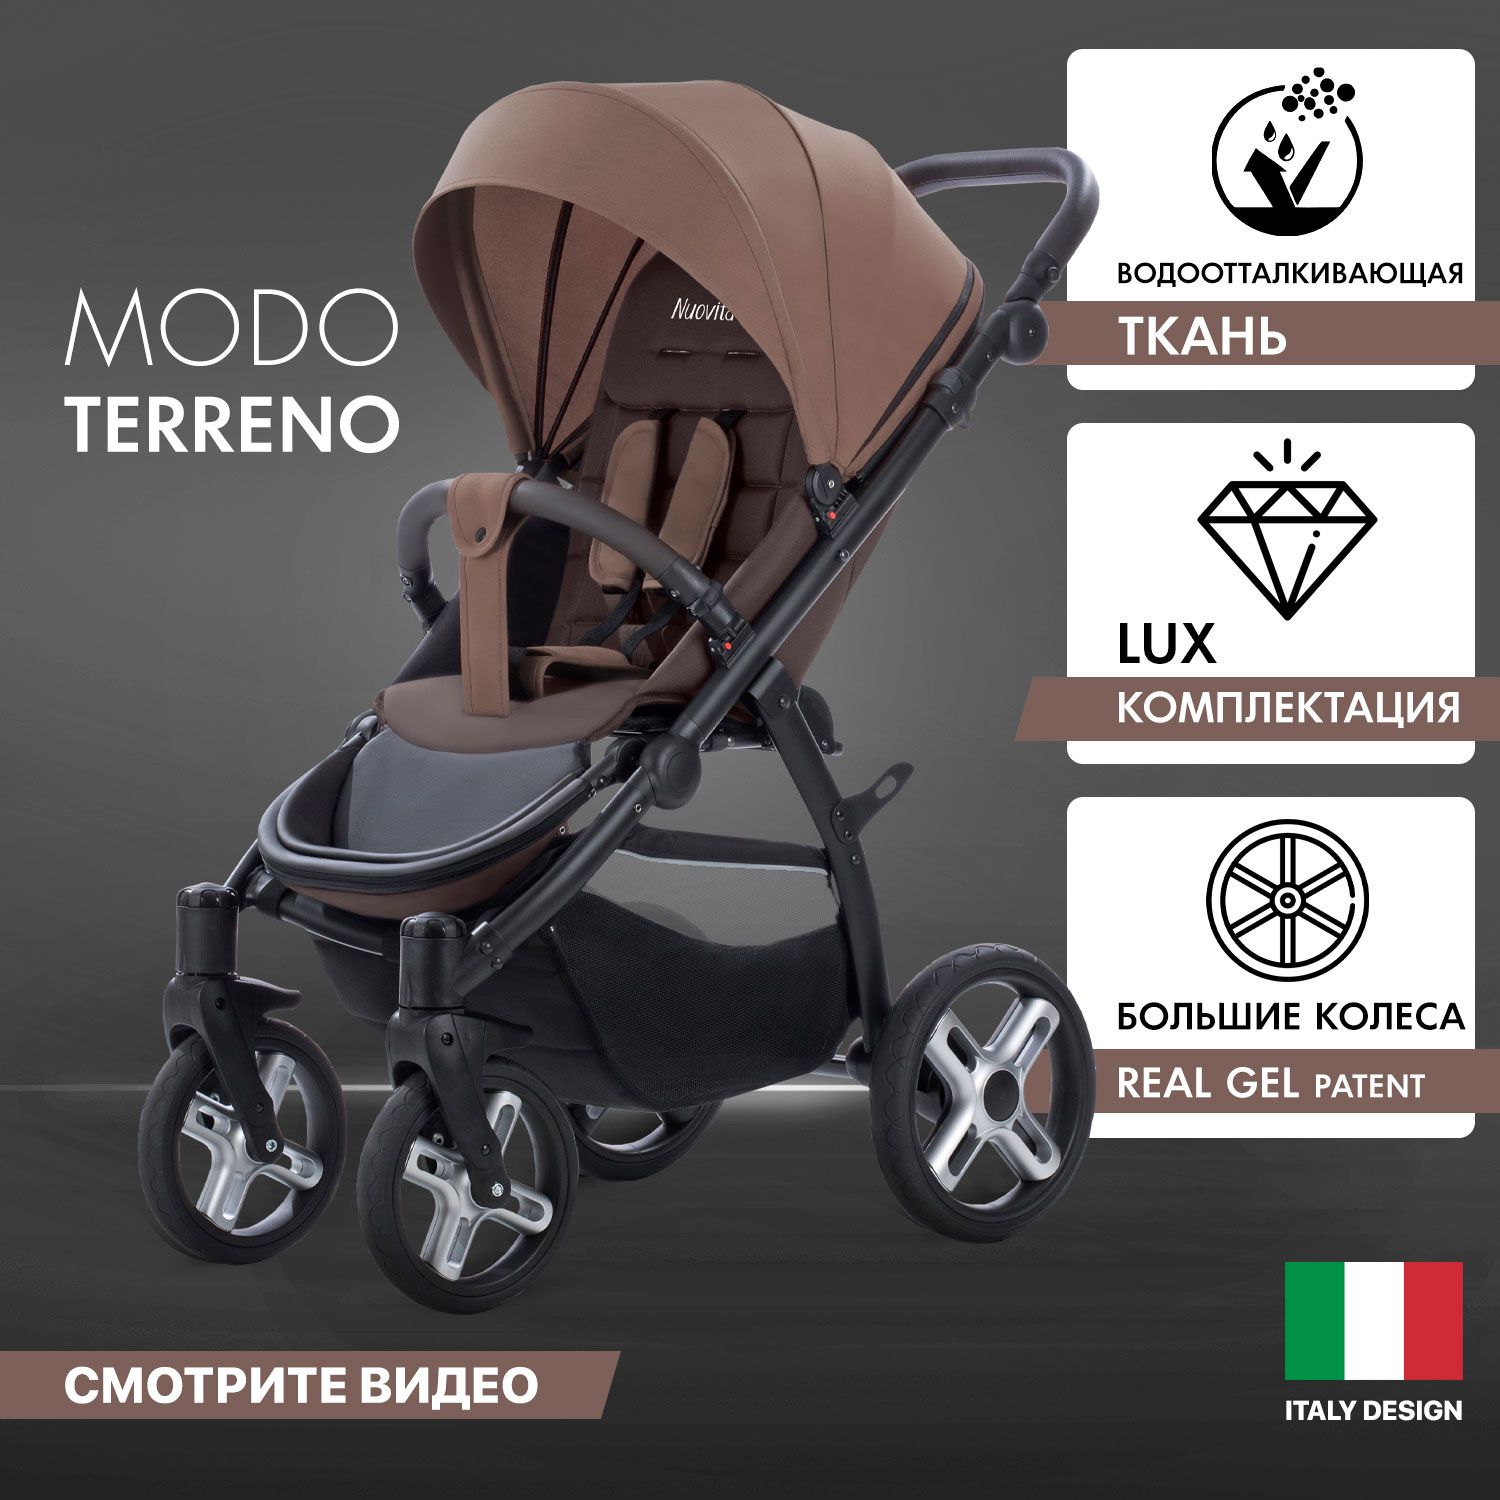 Прогулочная коляска Nuovita Modo Terreno Marrone scuro/Темно-коричневый коляска трансформер 2 в 1 nuovita diamante marrone коричневый